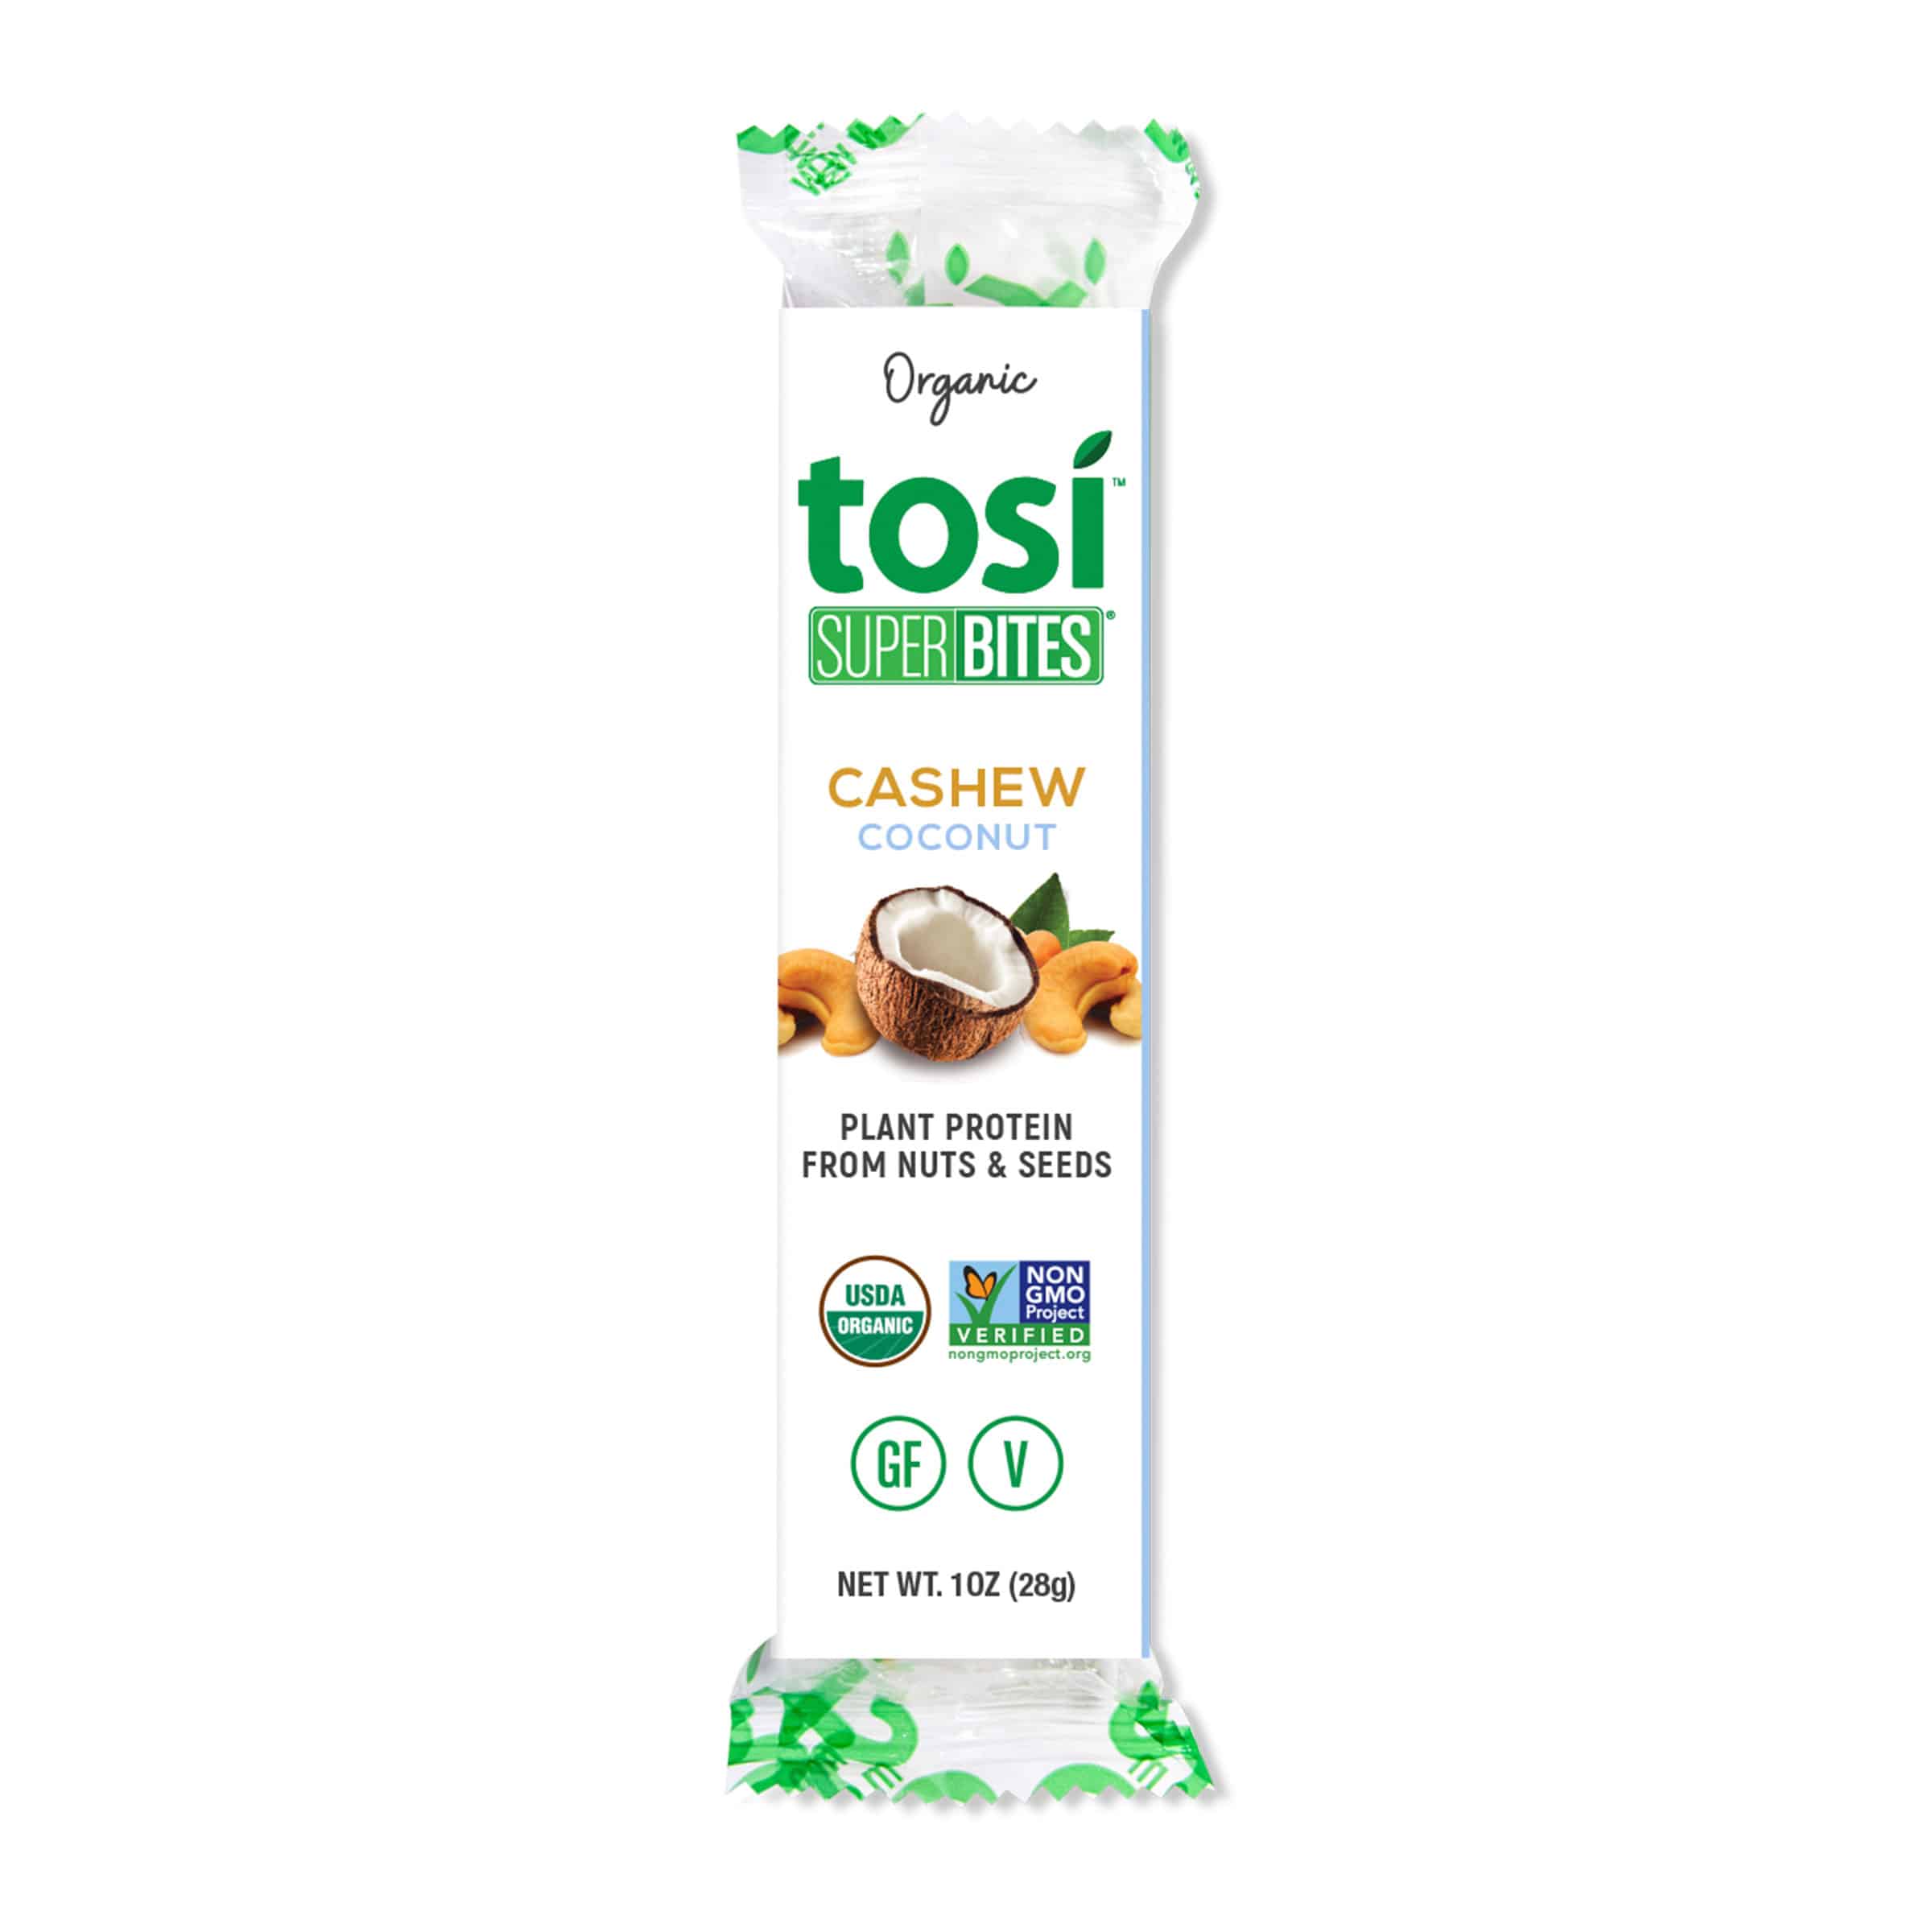 Tosi SuperBites Cashew Coconut 6 innerpacks per case 12.0 oz